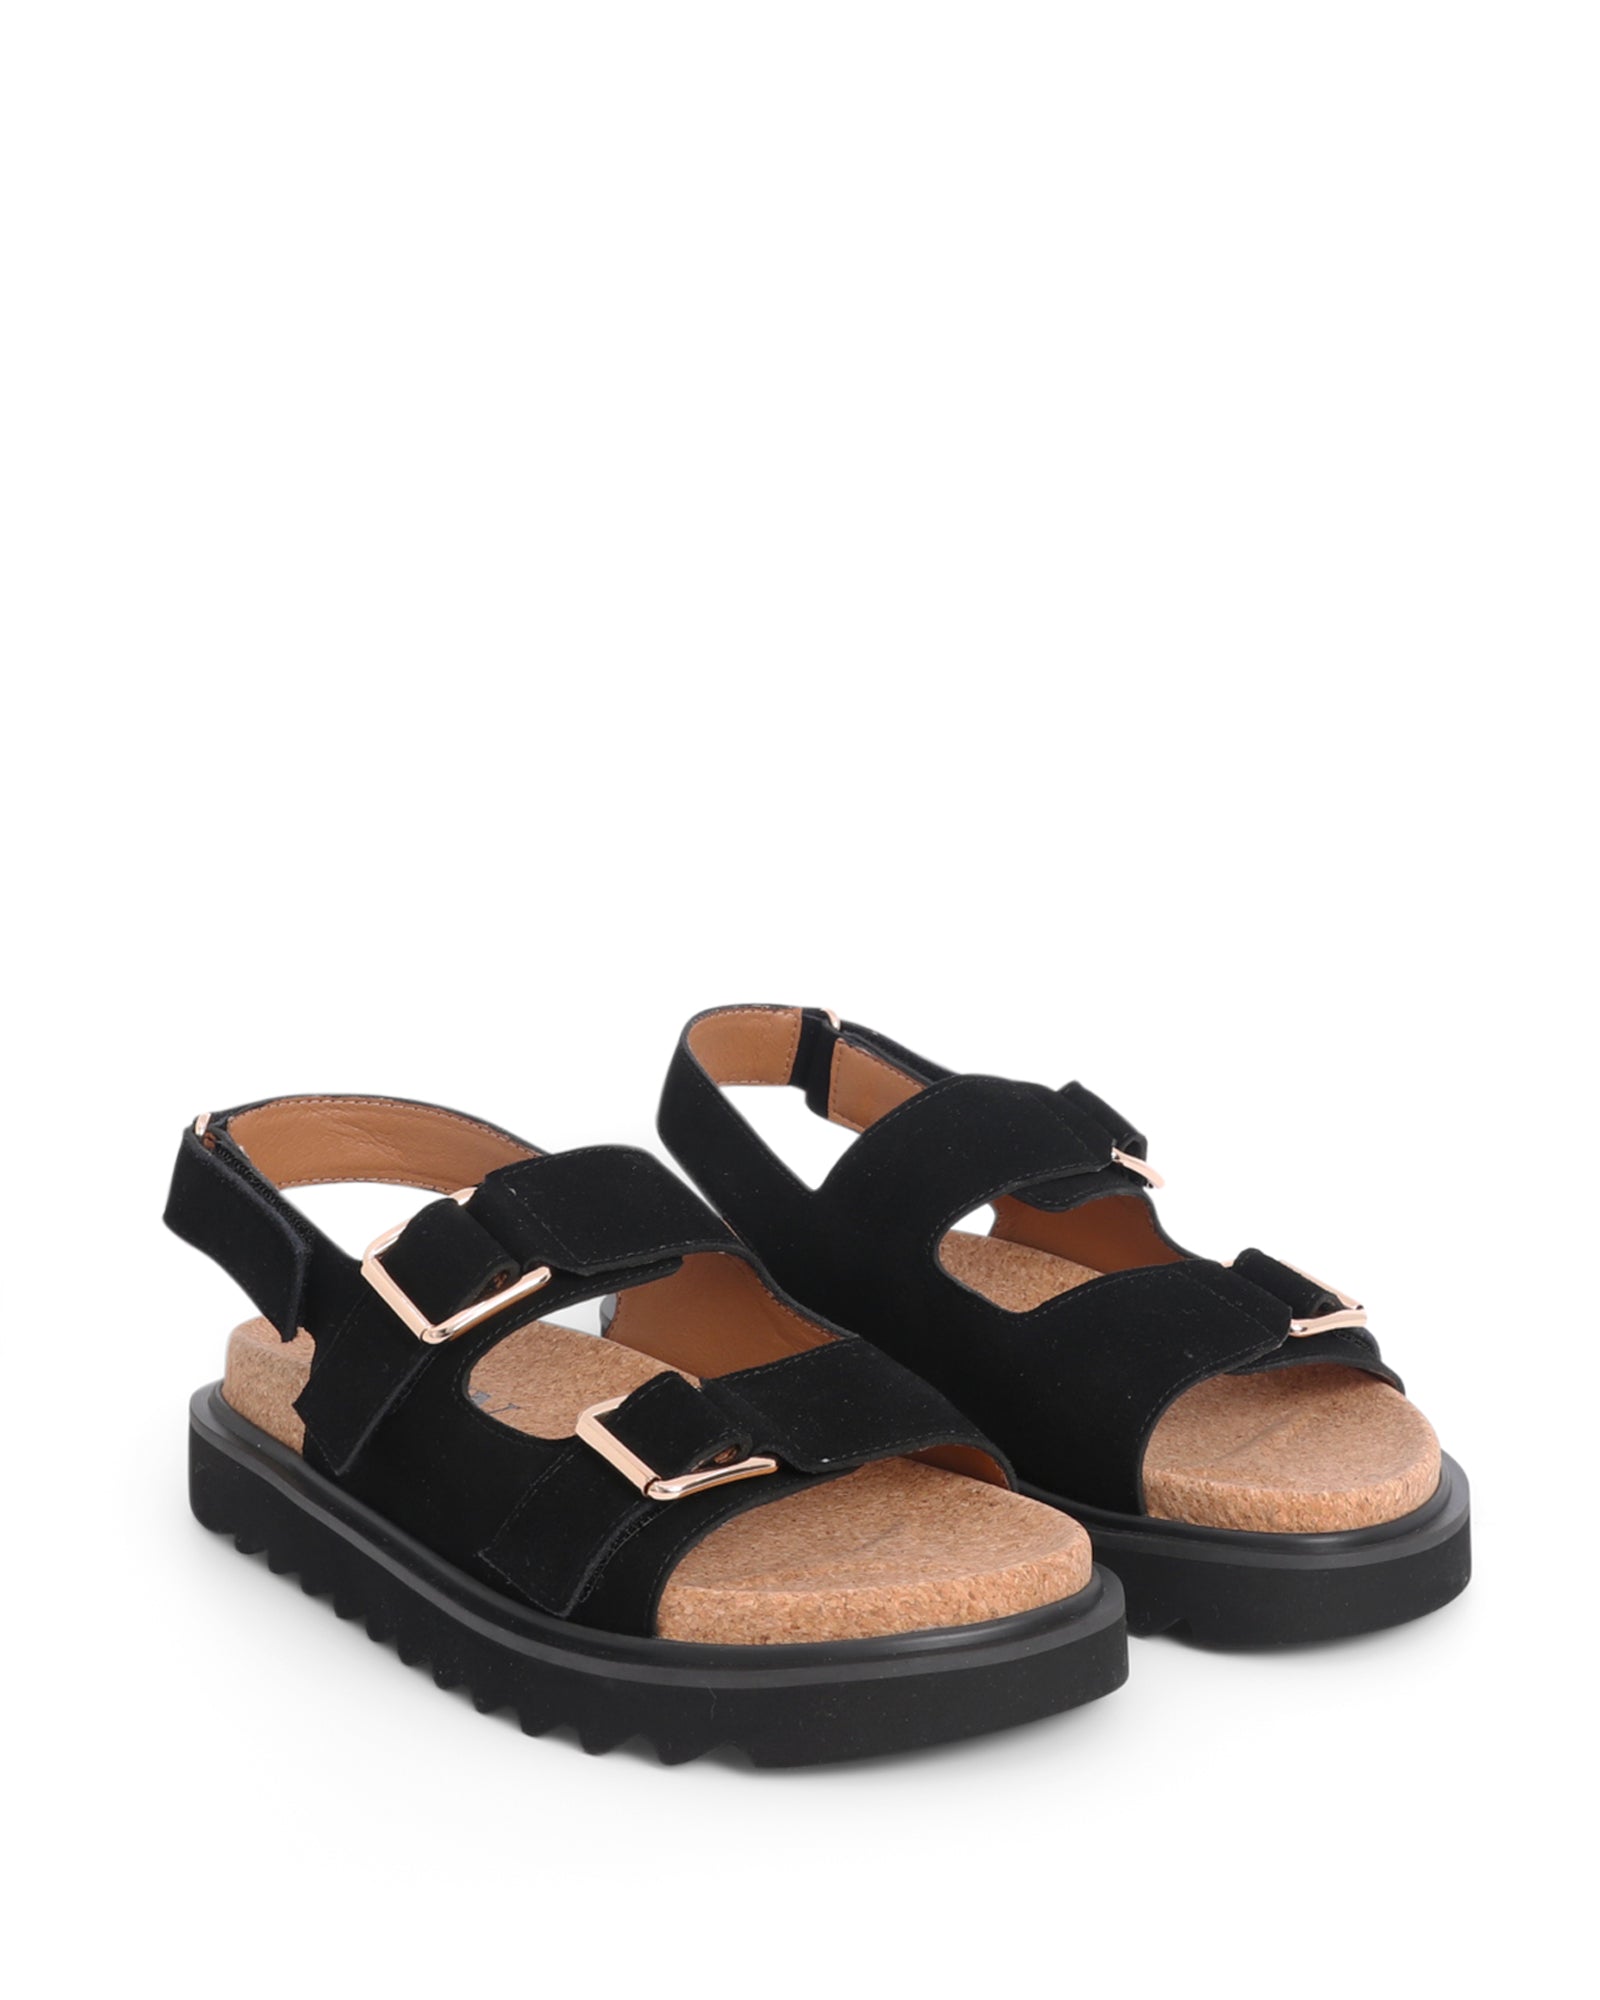 Tulum Black 2.5cm Sandal